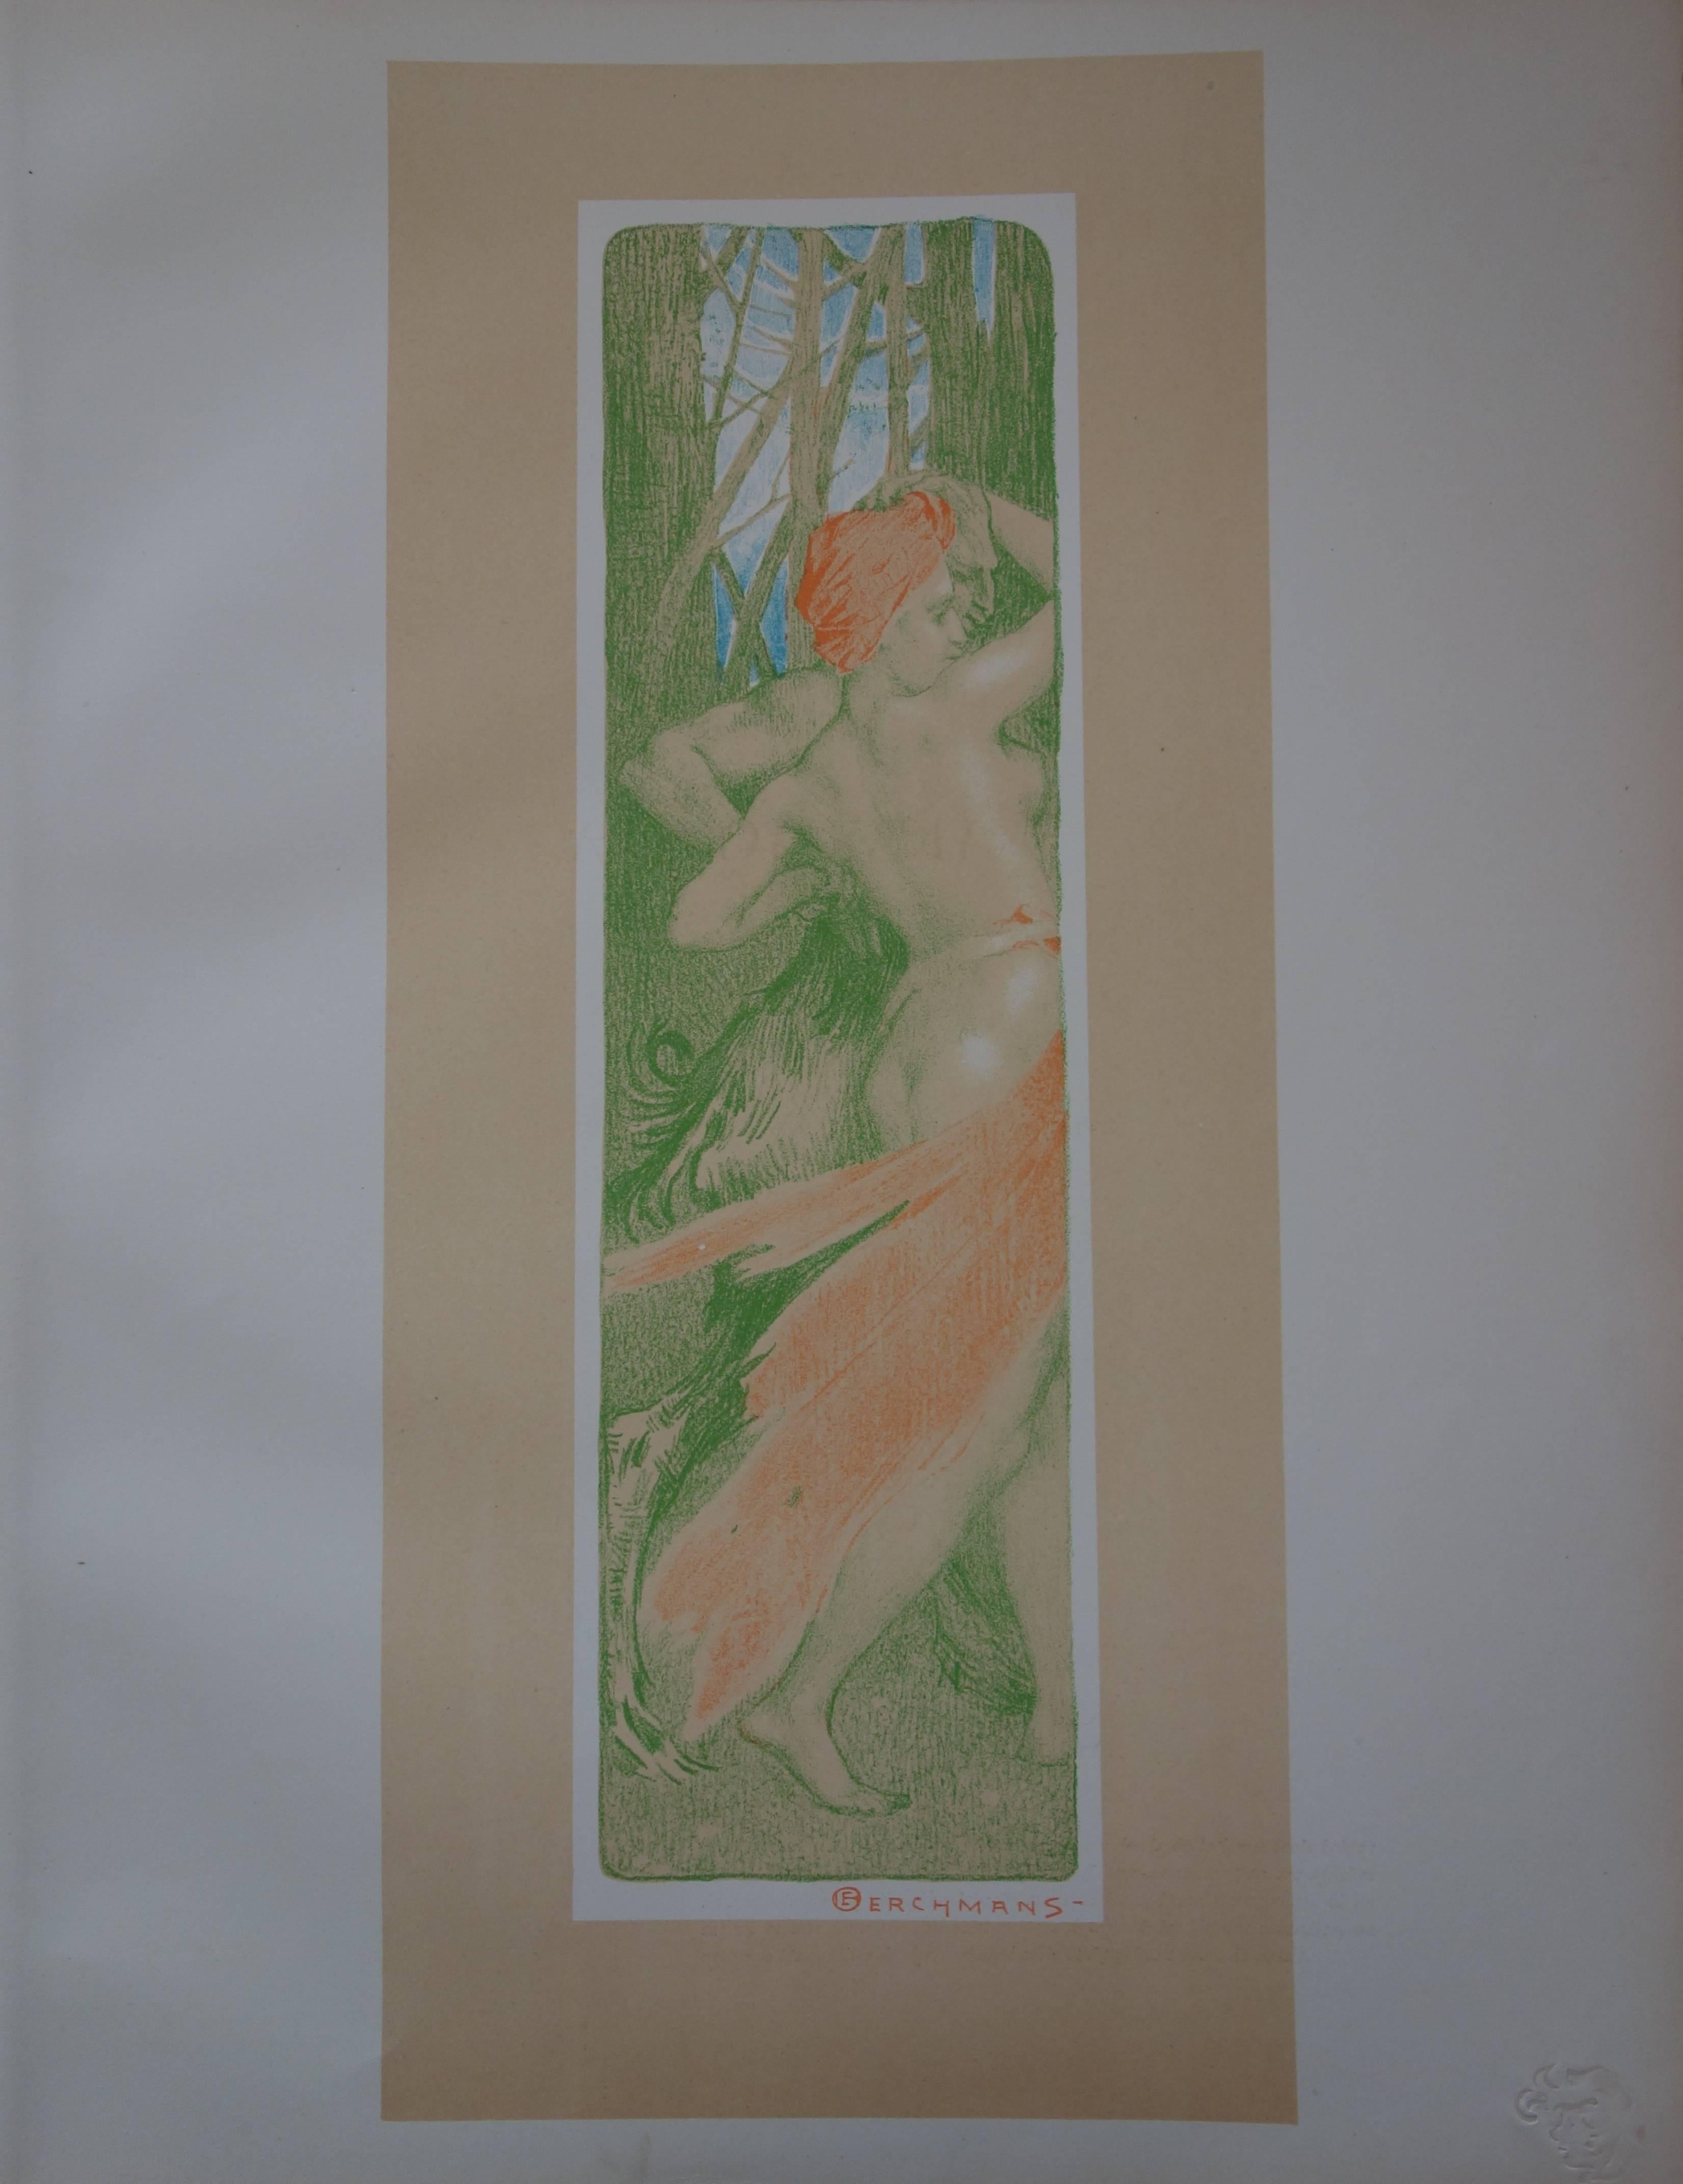 Renewal - Original lithograph - 1897